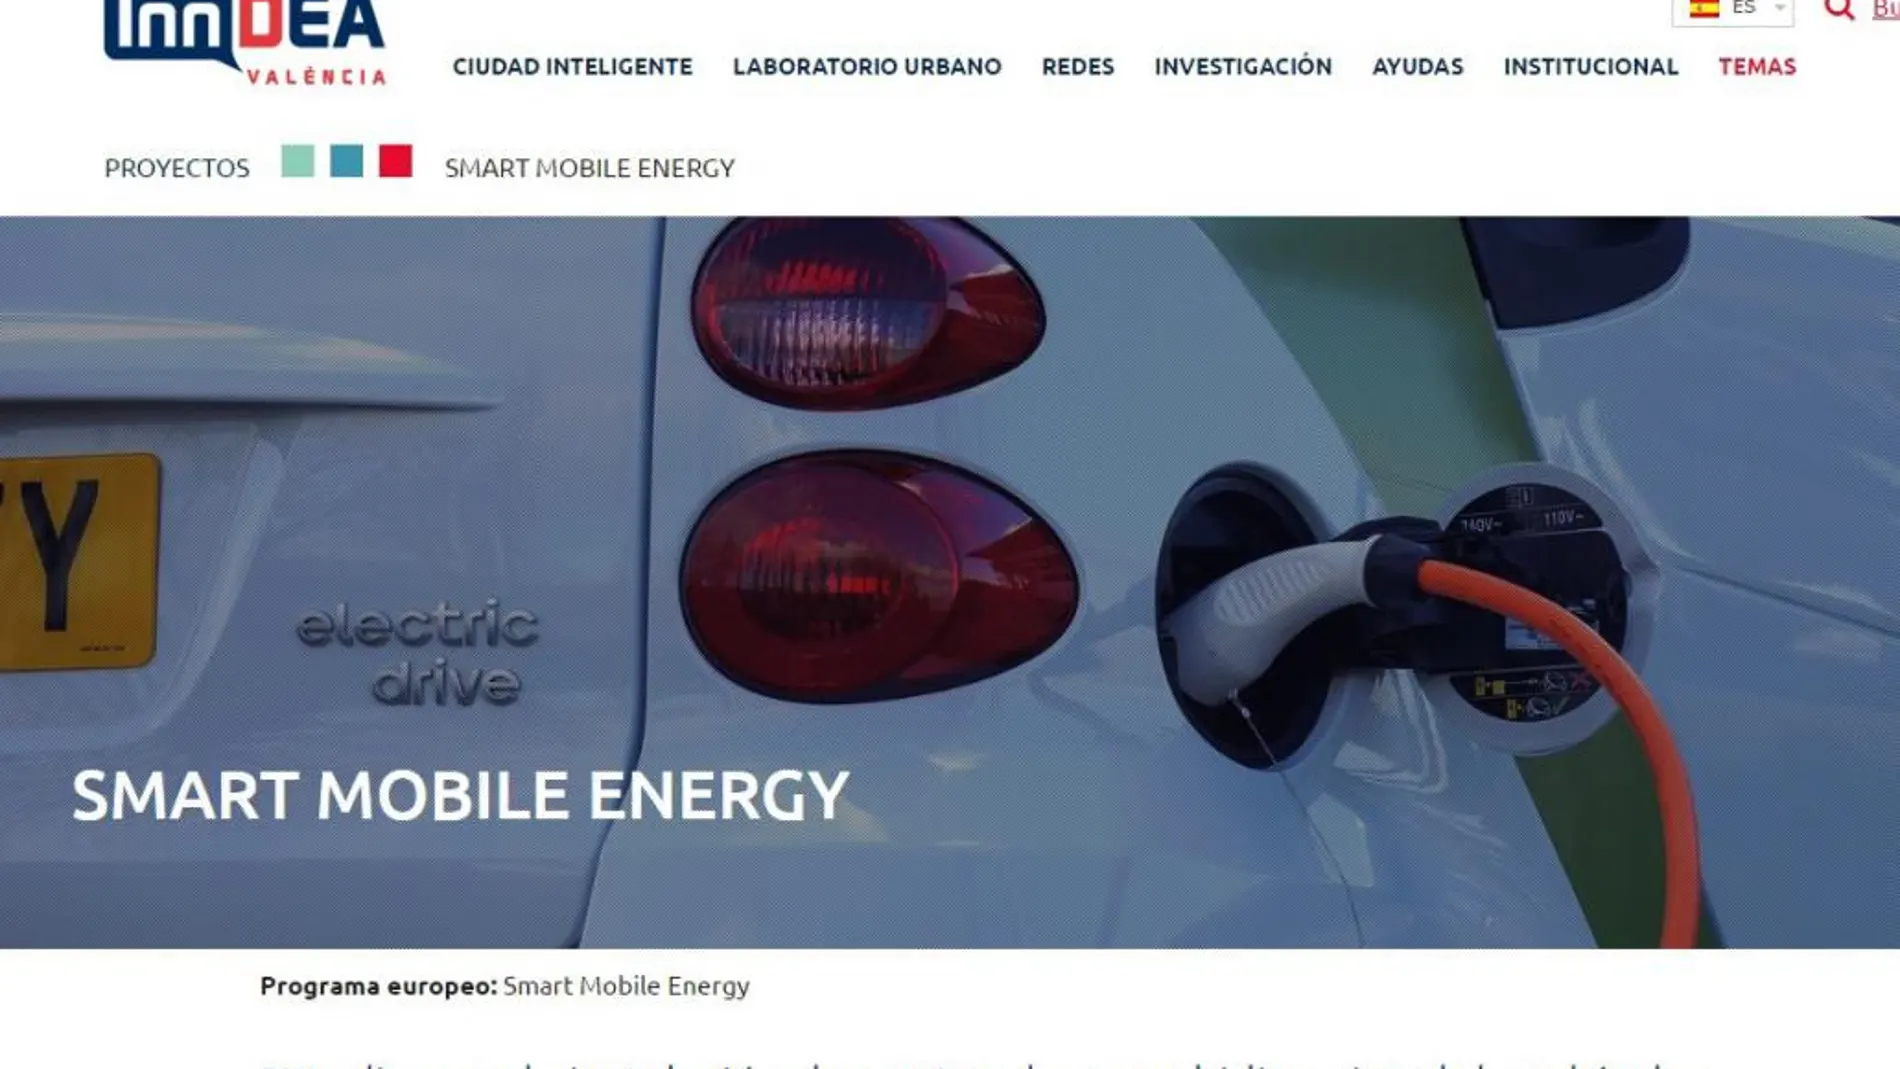 El Ayuntamiento demora la puesta en marcha del Smart Mobile Energy por dificultades legales y escasa rentabilidad